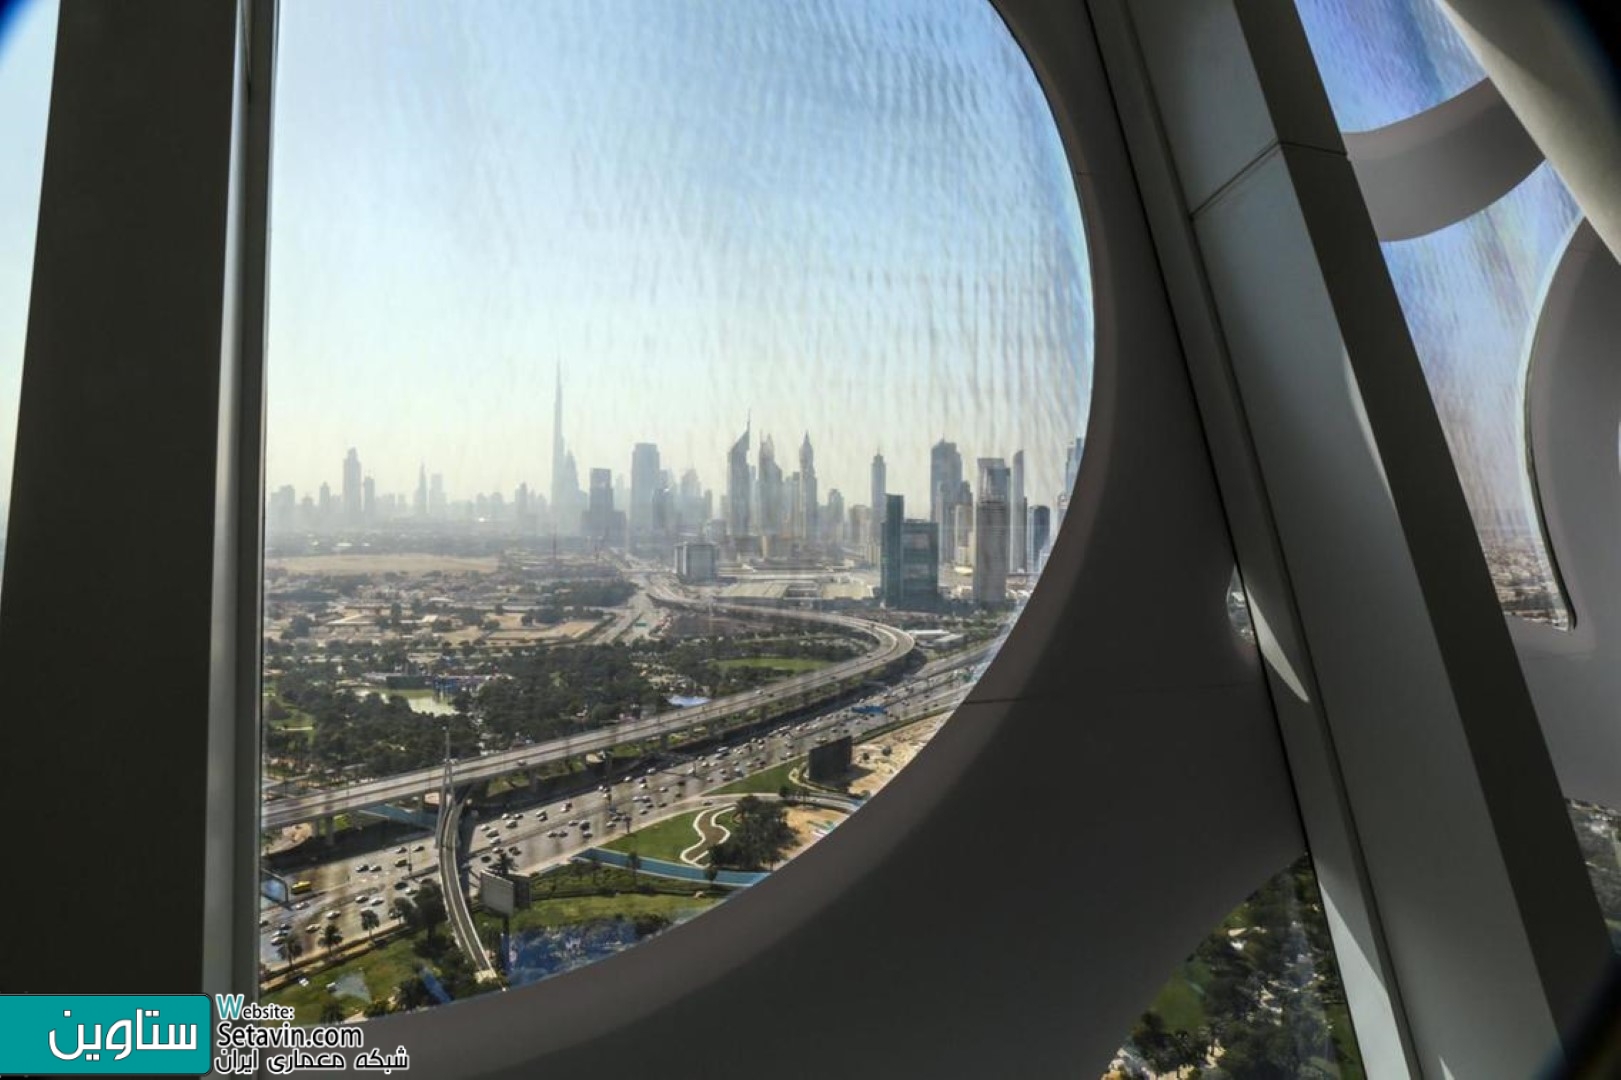 دبی , News , بزرگترین قاب دنبا , Architecture , قاب عکس , News , قاب عکس در دبی , امارات , پارک Zabeel ,  معماری منظر دبی , Skyscrapers , روکش طلا , UAE , تقویت تعامل مردم , Dubai , آینده شهر , Dubai Frame ,  Frame , شهر دبی